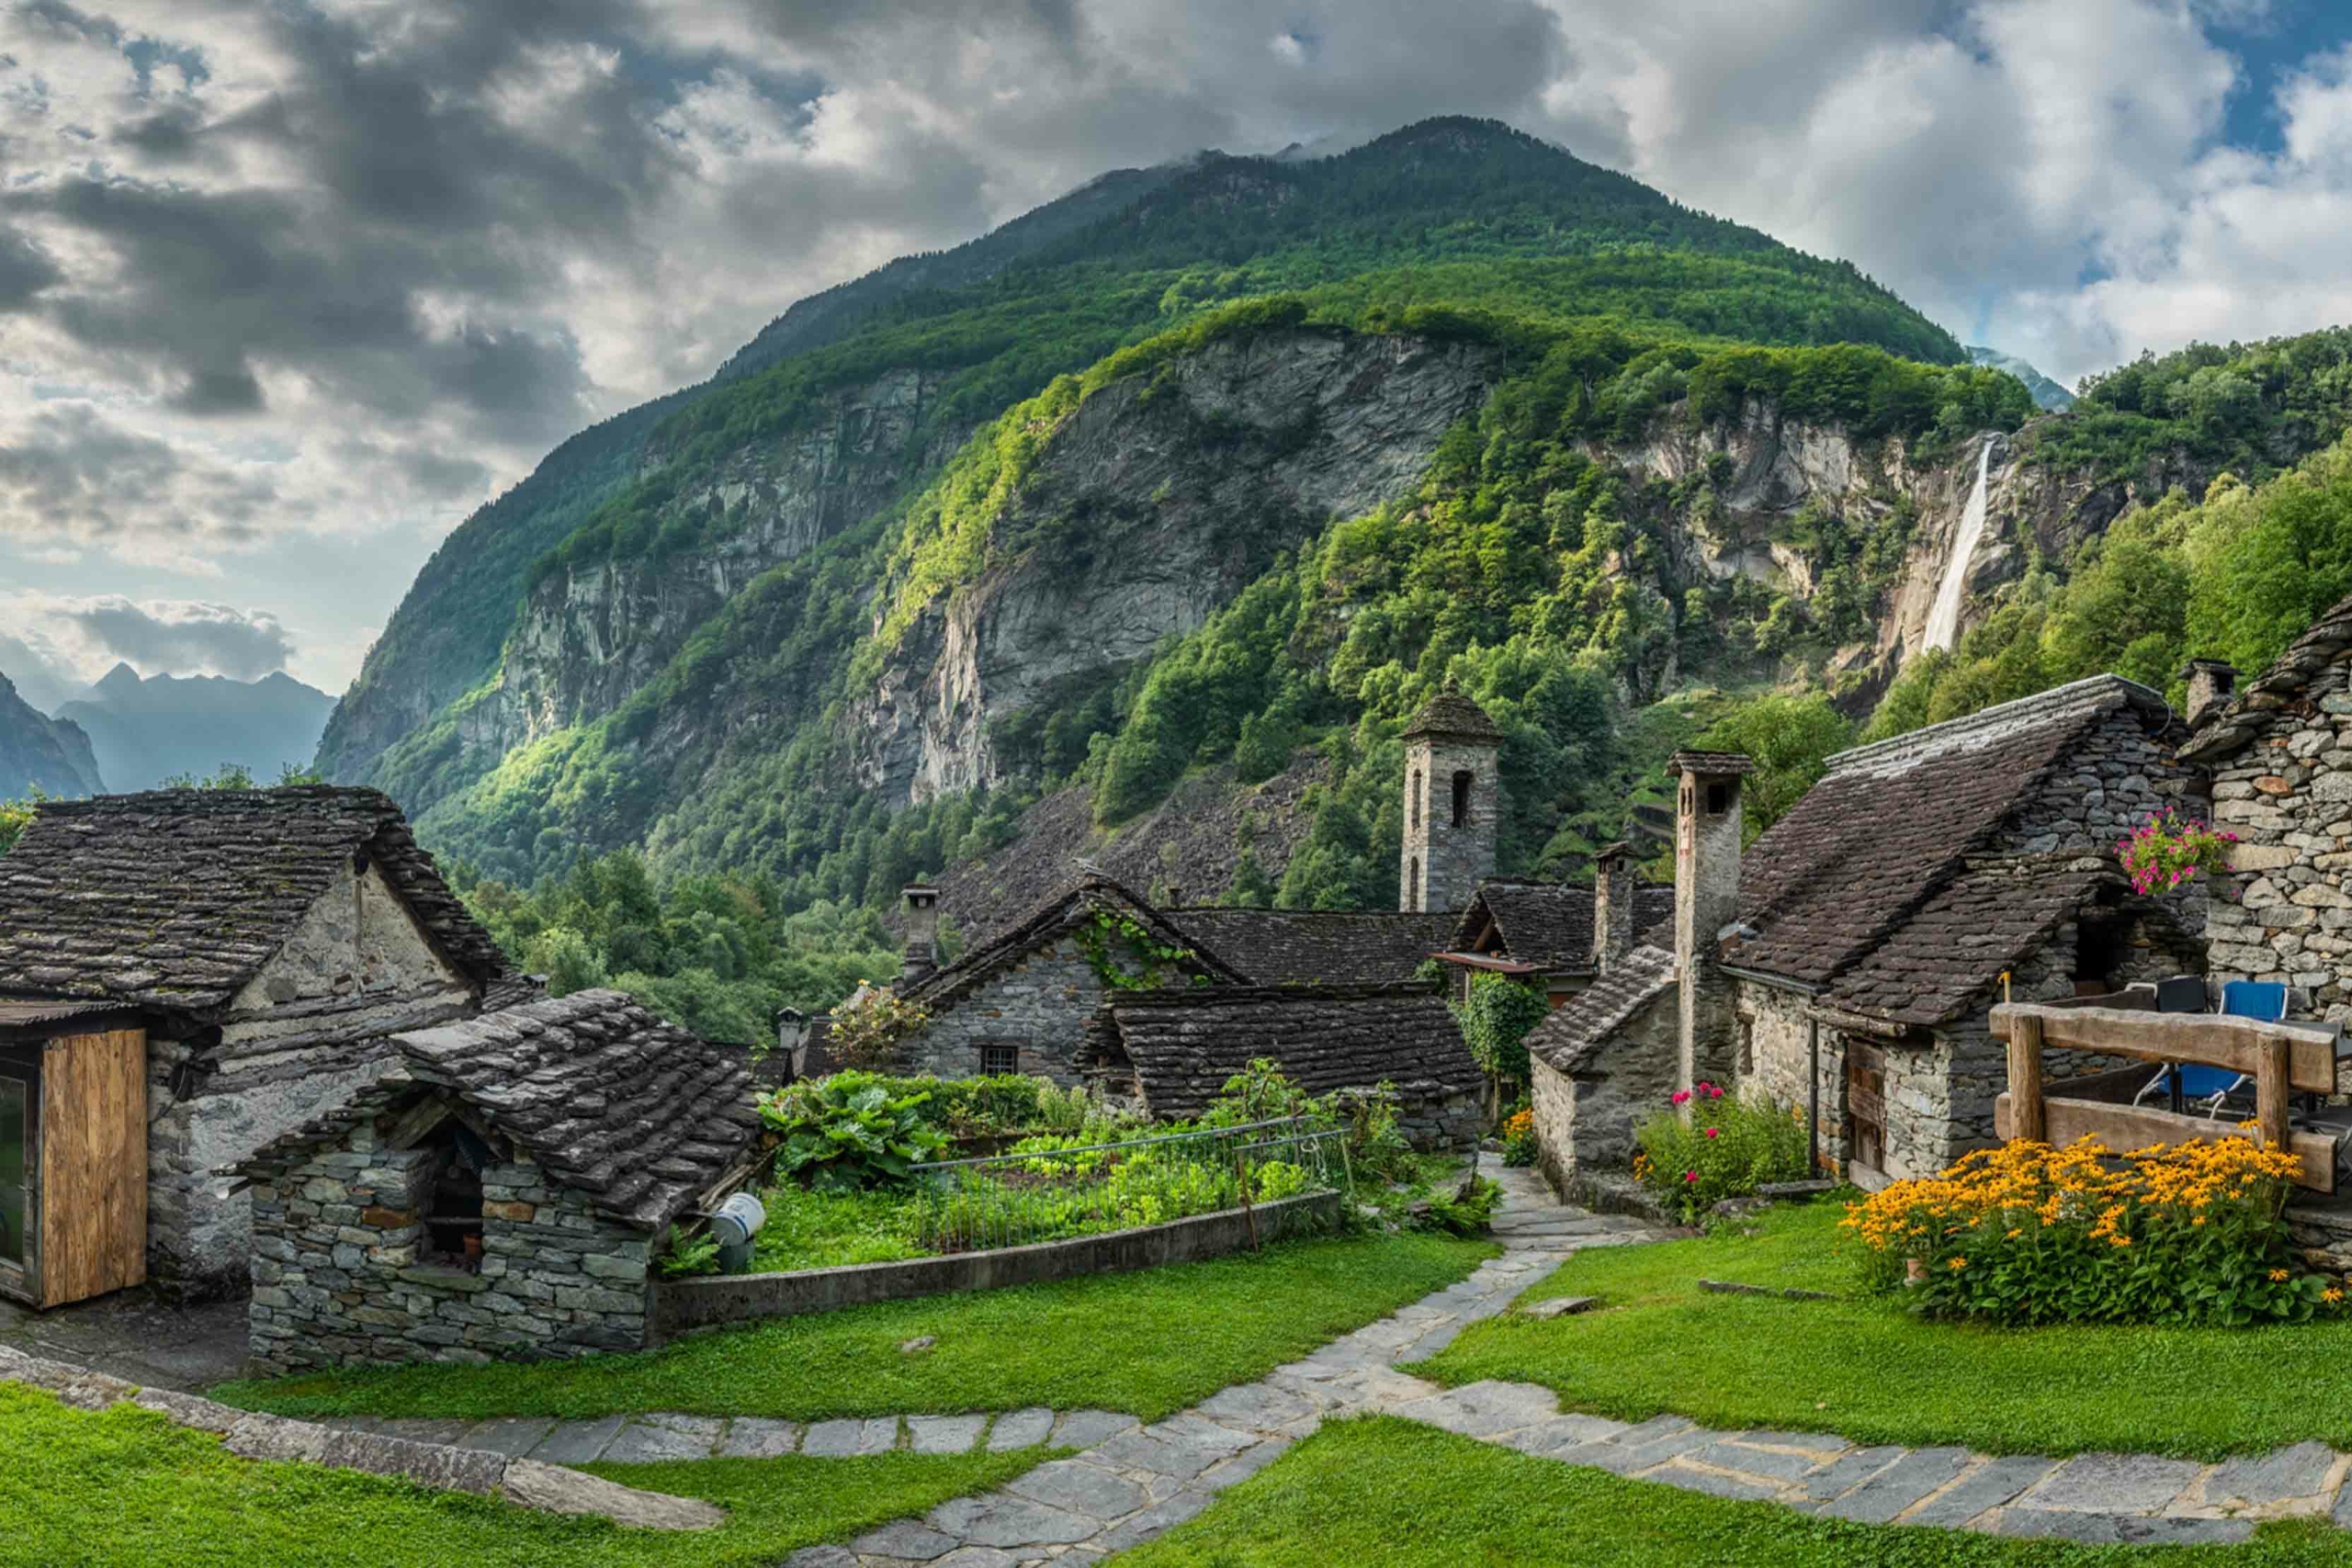 Một ngôi làng nhỏ ở Thung lũng Bavona, Thụy Sĩ. (Ảnh: Đăng dưới sự cho phép của Sylvia Michel Photography)